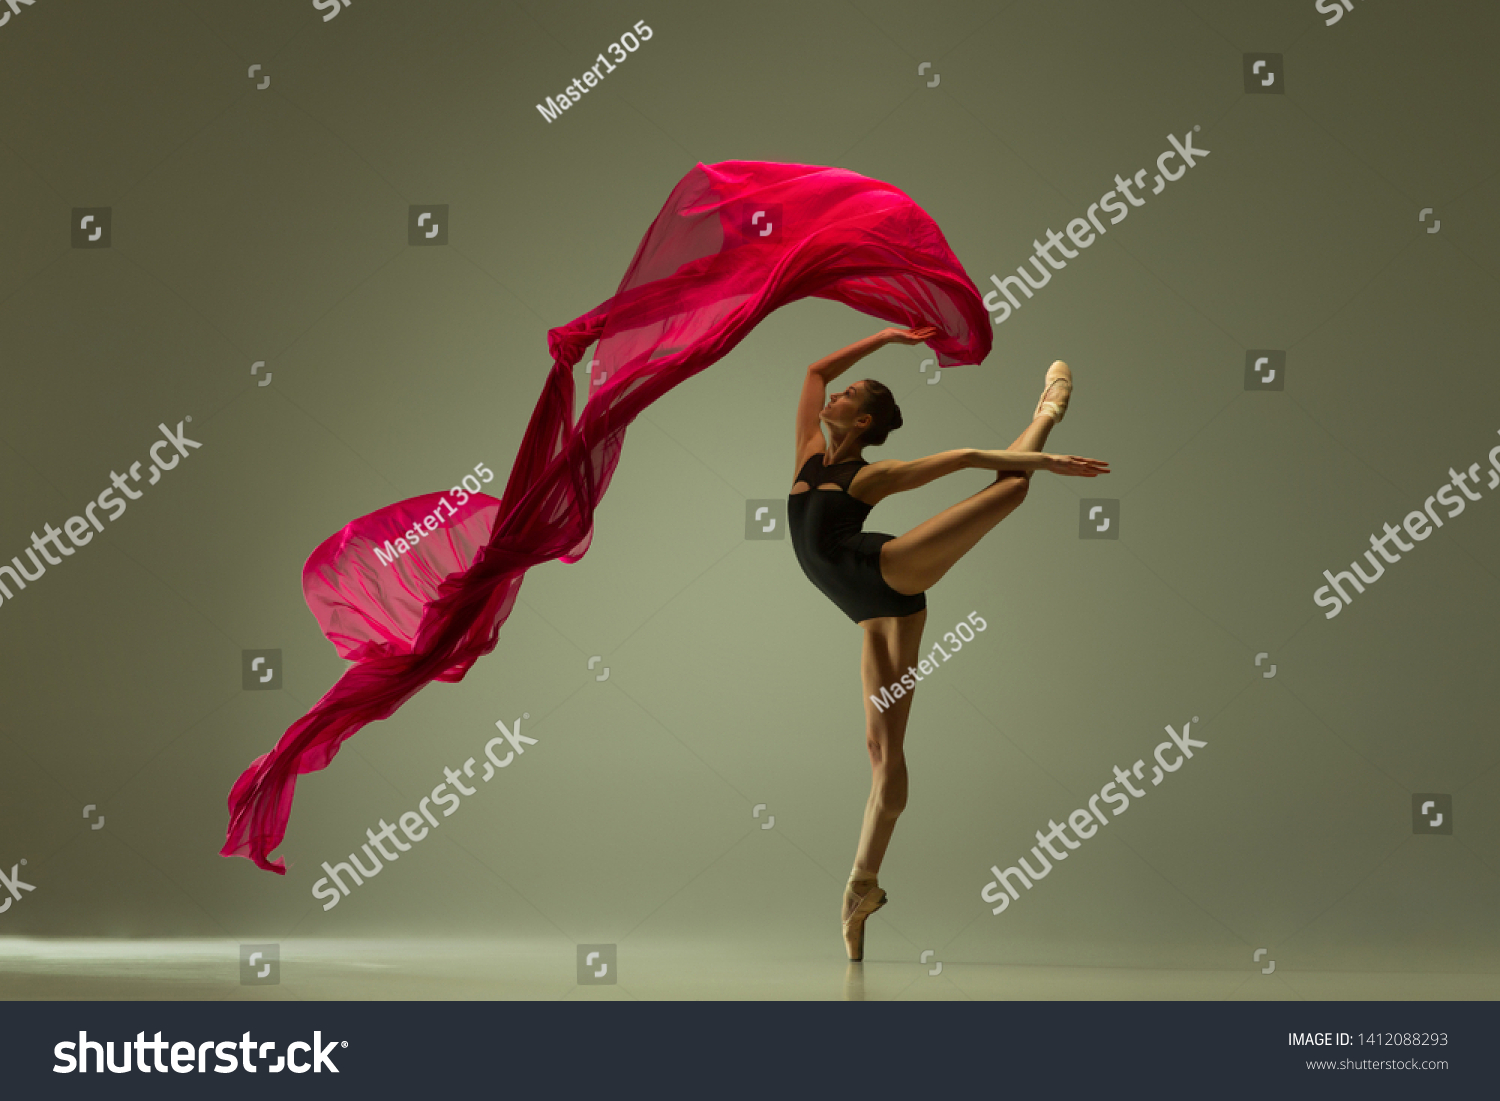 グレイのスタジオ背景に優美なバレエダンサーまたはクラシックバレリーナダンス ピンクの絹布を持つ女性 ダンス 優雅さ アーティスト コンテンポラリー 動き 行動 動きのコンセプト の写真素材 今すぐ編集 1413